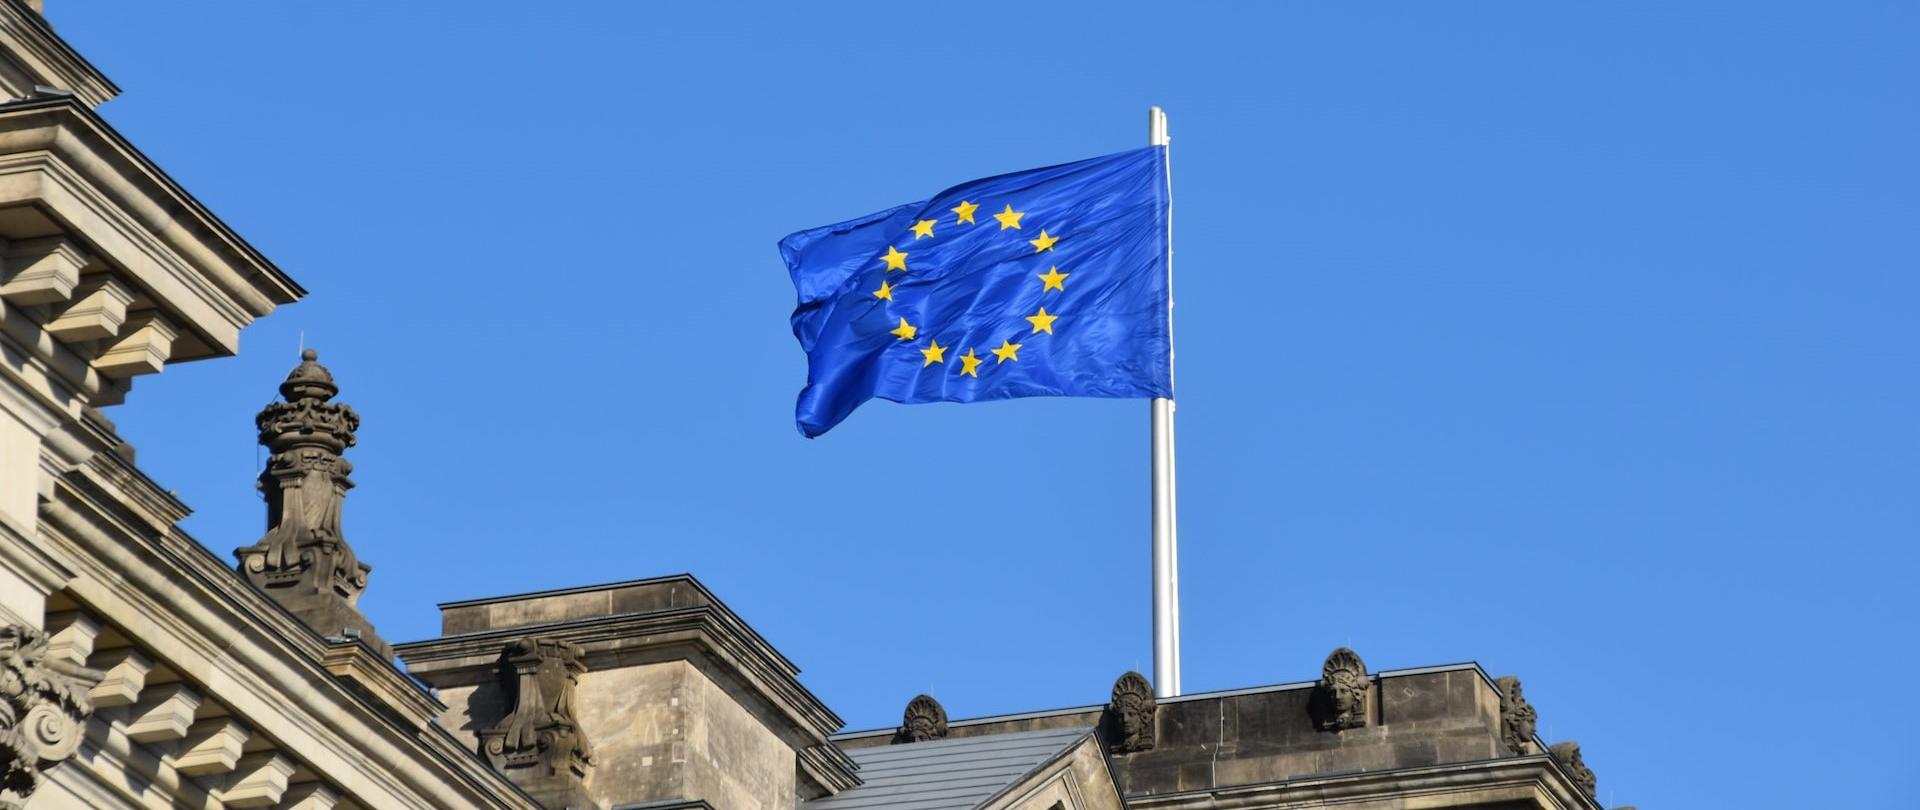 Flaga UE na dachu budynku